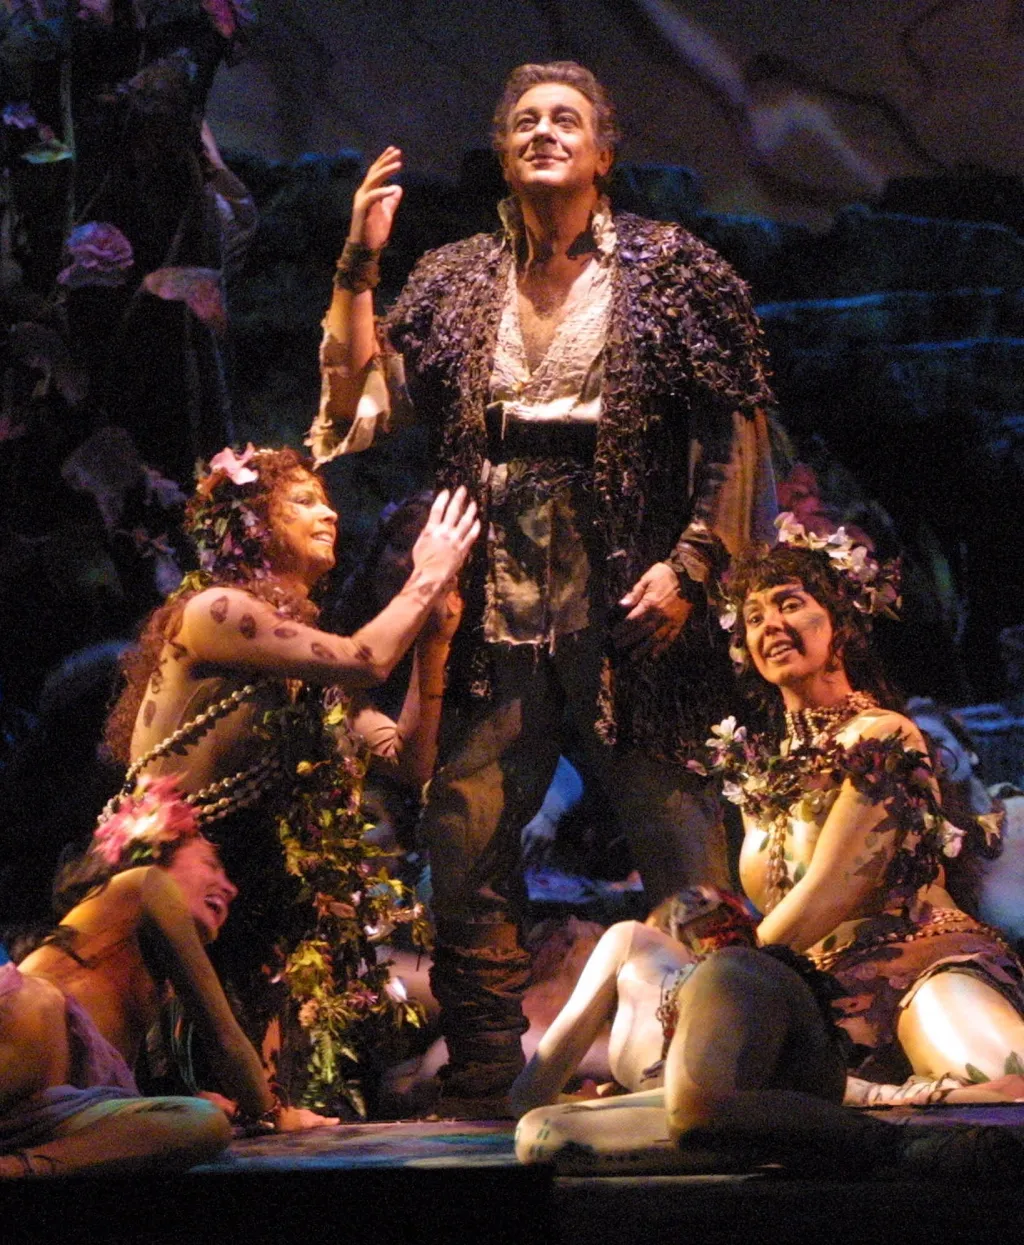 Fotka z 26. března 2001 ukazuje mistra Dominga, jak zpívá v titulní roli v opeře „Parsifal“ během zkoušky v Metropolitní opeře v New Yorku